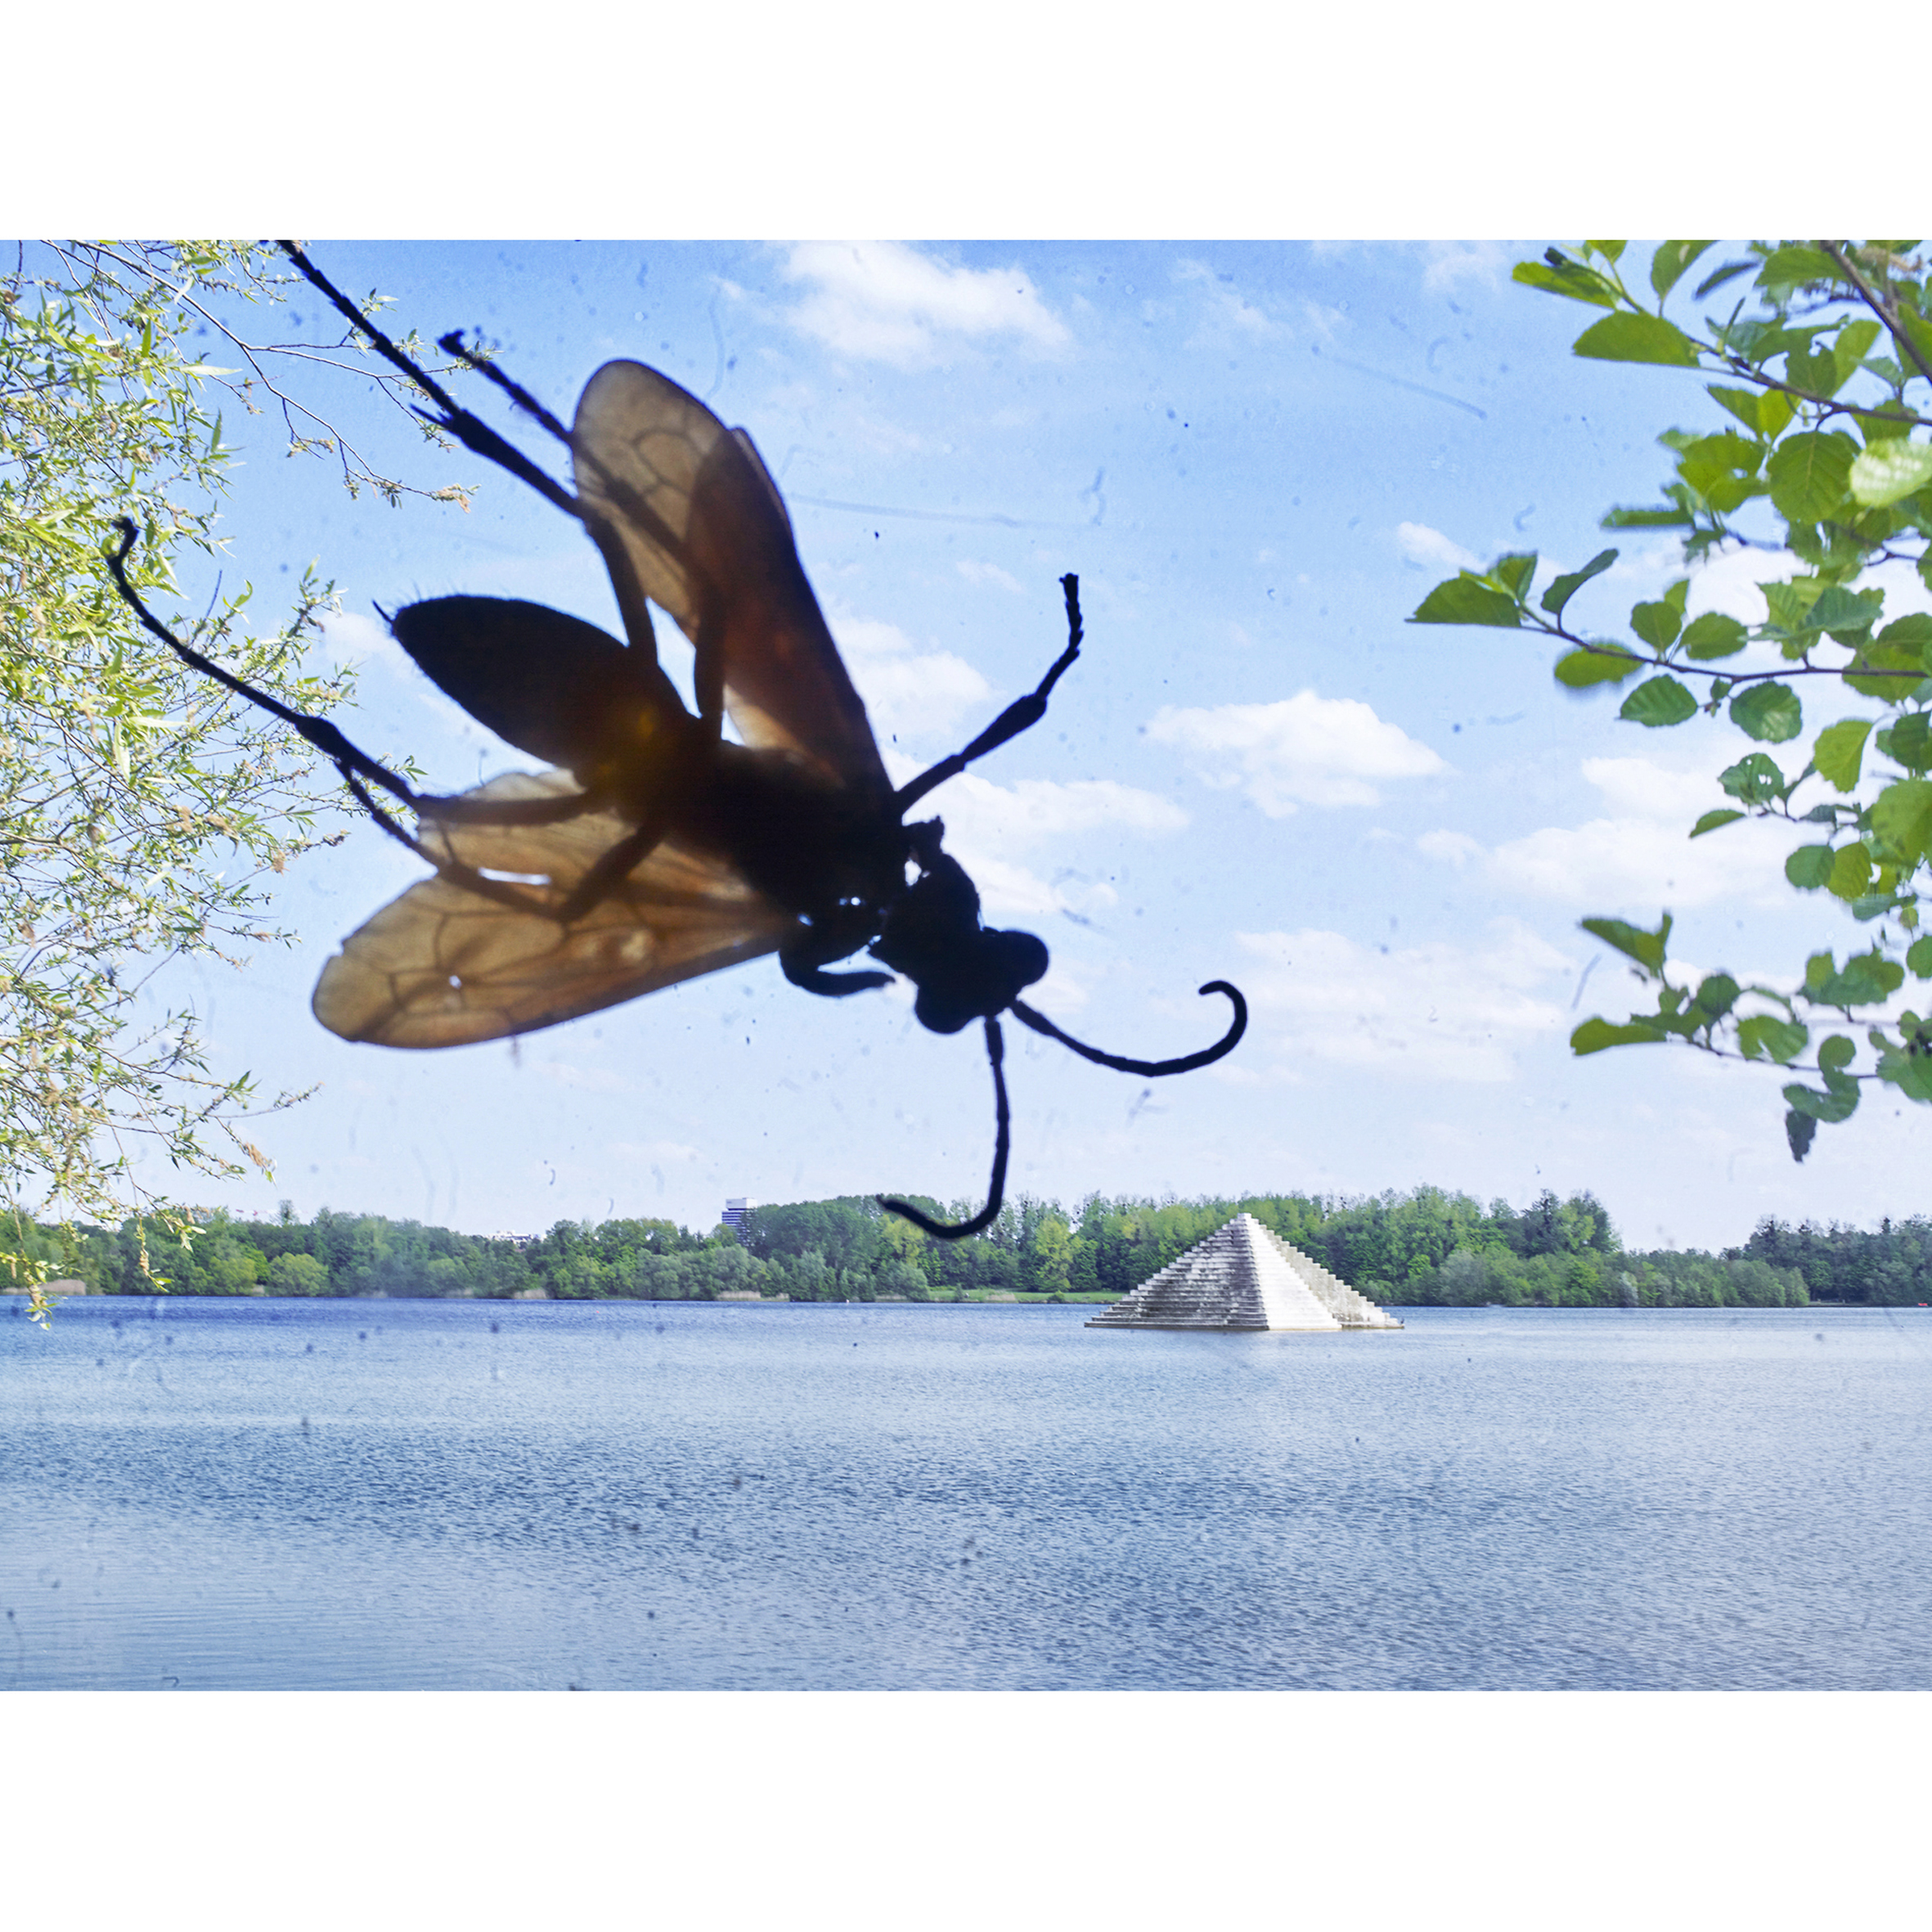 Bug insectes Punaise Cheminée Usine Bleue Ivry sur Seine © Rémy Artiges - Photographie